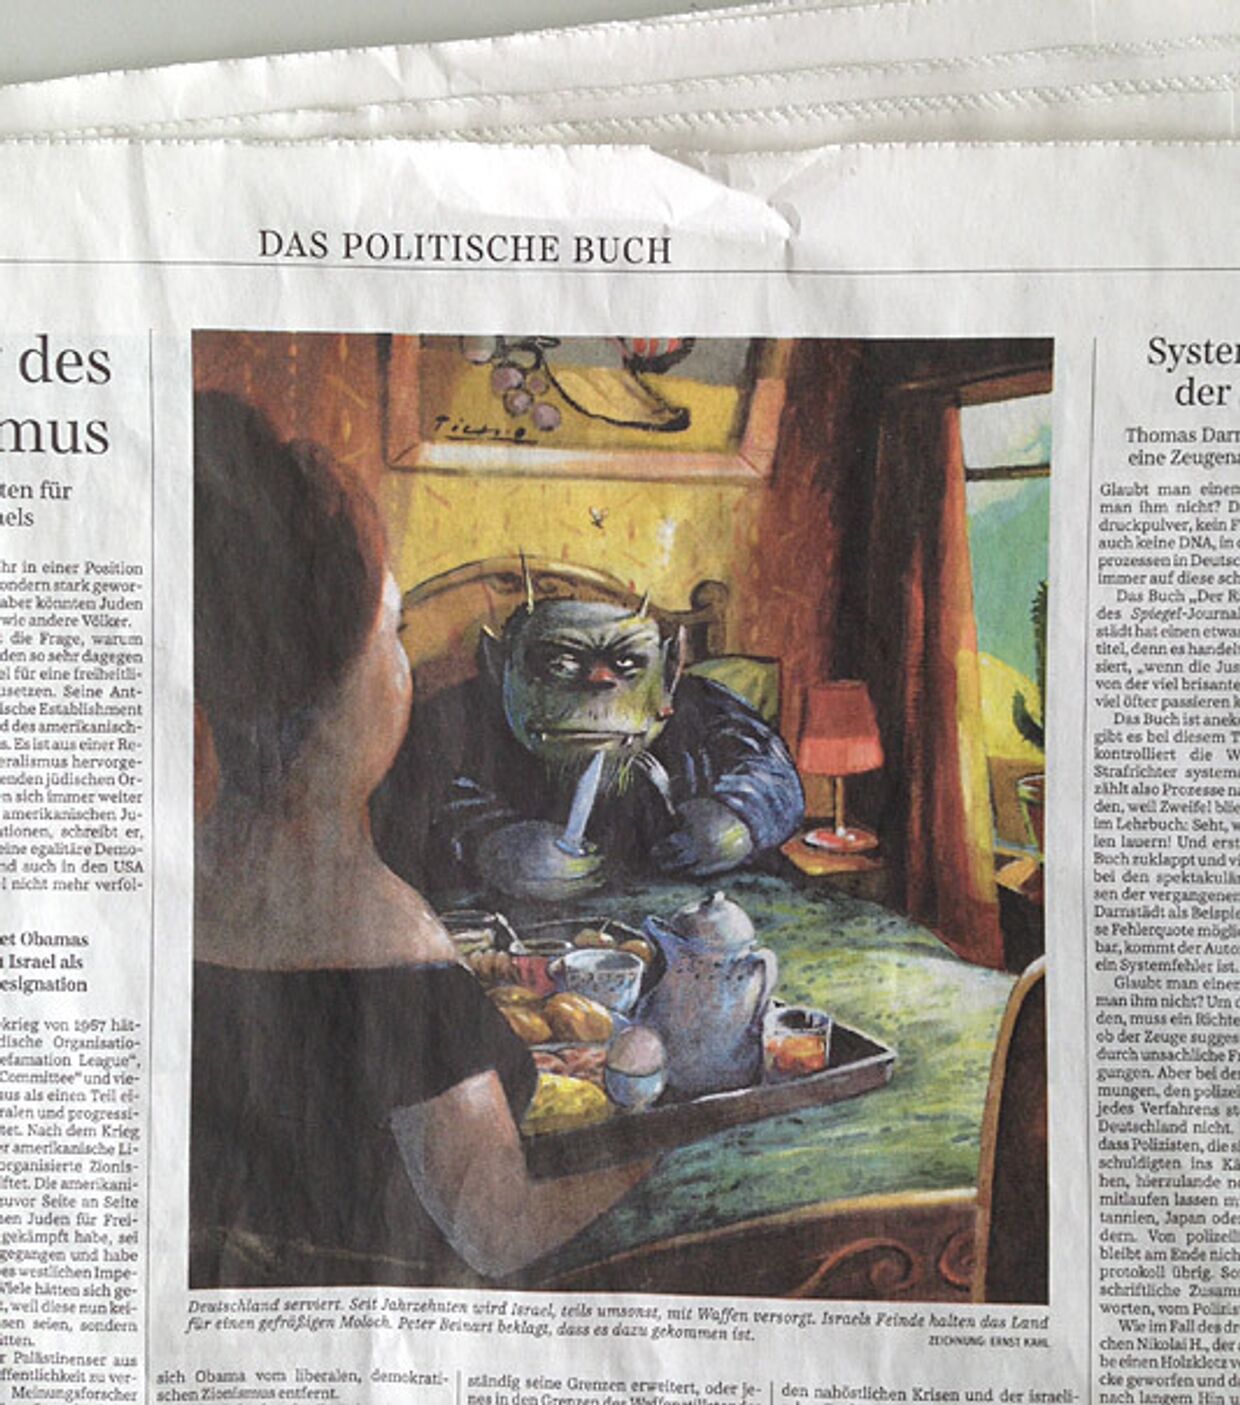 Иллюстрация Эрнста Каля в газете Sueddeutsche Zeitung